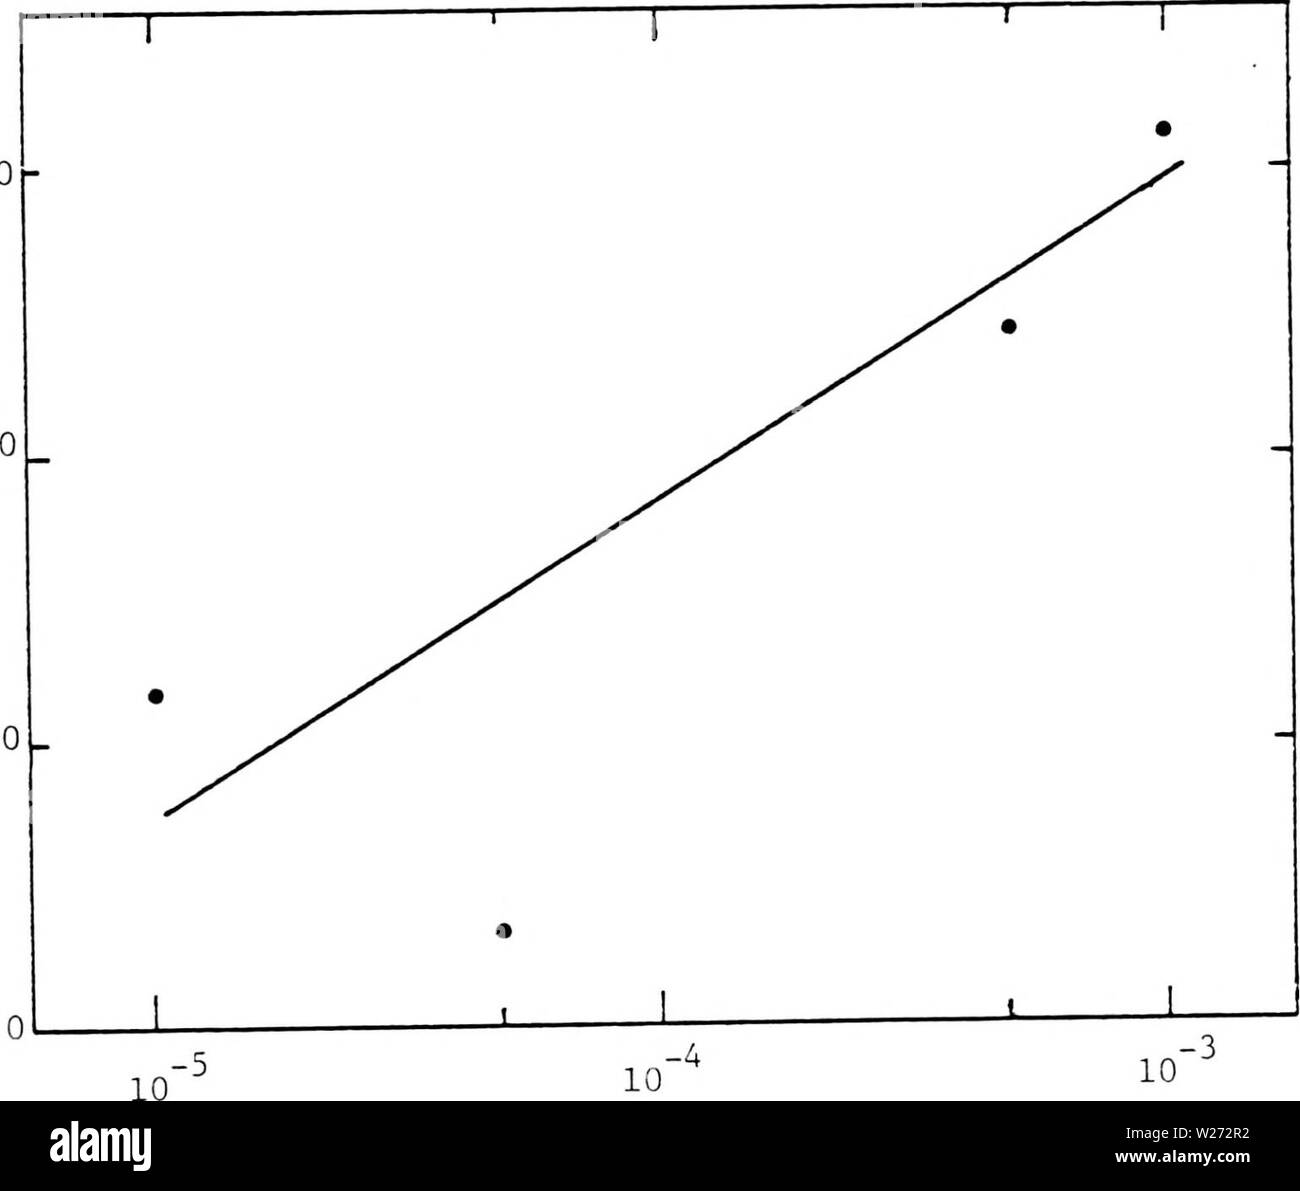 Imagen de archivo de la página 34 de la deposición, corrosión y coloración. La deposición, corrosión y coloración de trióxido de tungsteno de películas delgadas depositioncorros electrocrómica00soles Año: 1983 28 3.o 1,0 0,0 P (Torr) °2 Figura 2.11. Intensidad de señal relativa a Ho de espectrometría de masas de iones secundarios (SIMS) versus la presión parcial de oxígeno durante la deposición de W03 de películas delgadas. Foto de stock